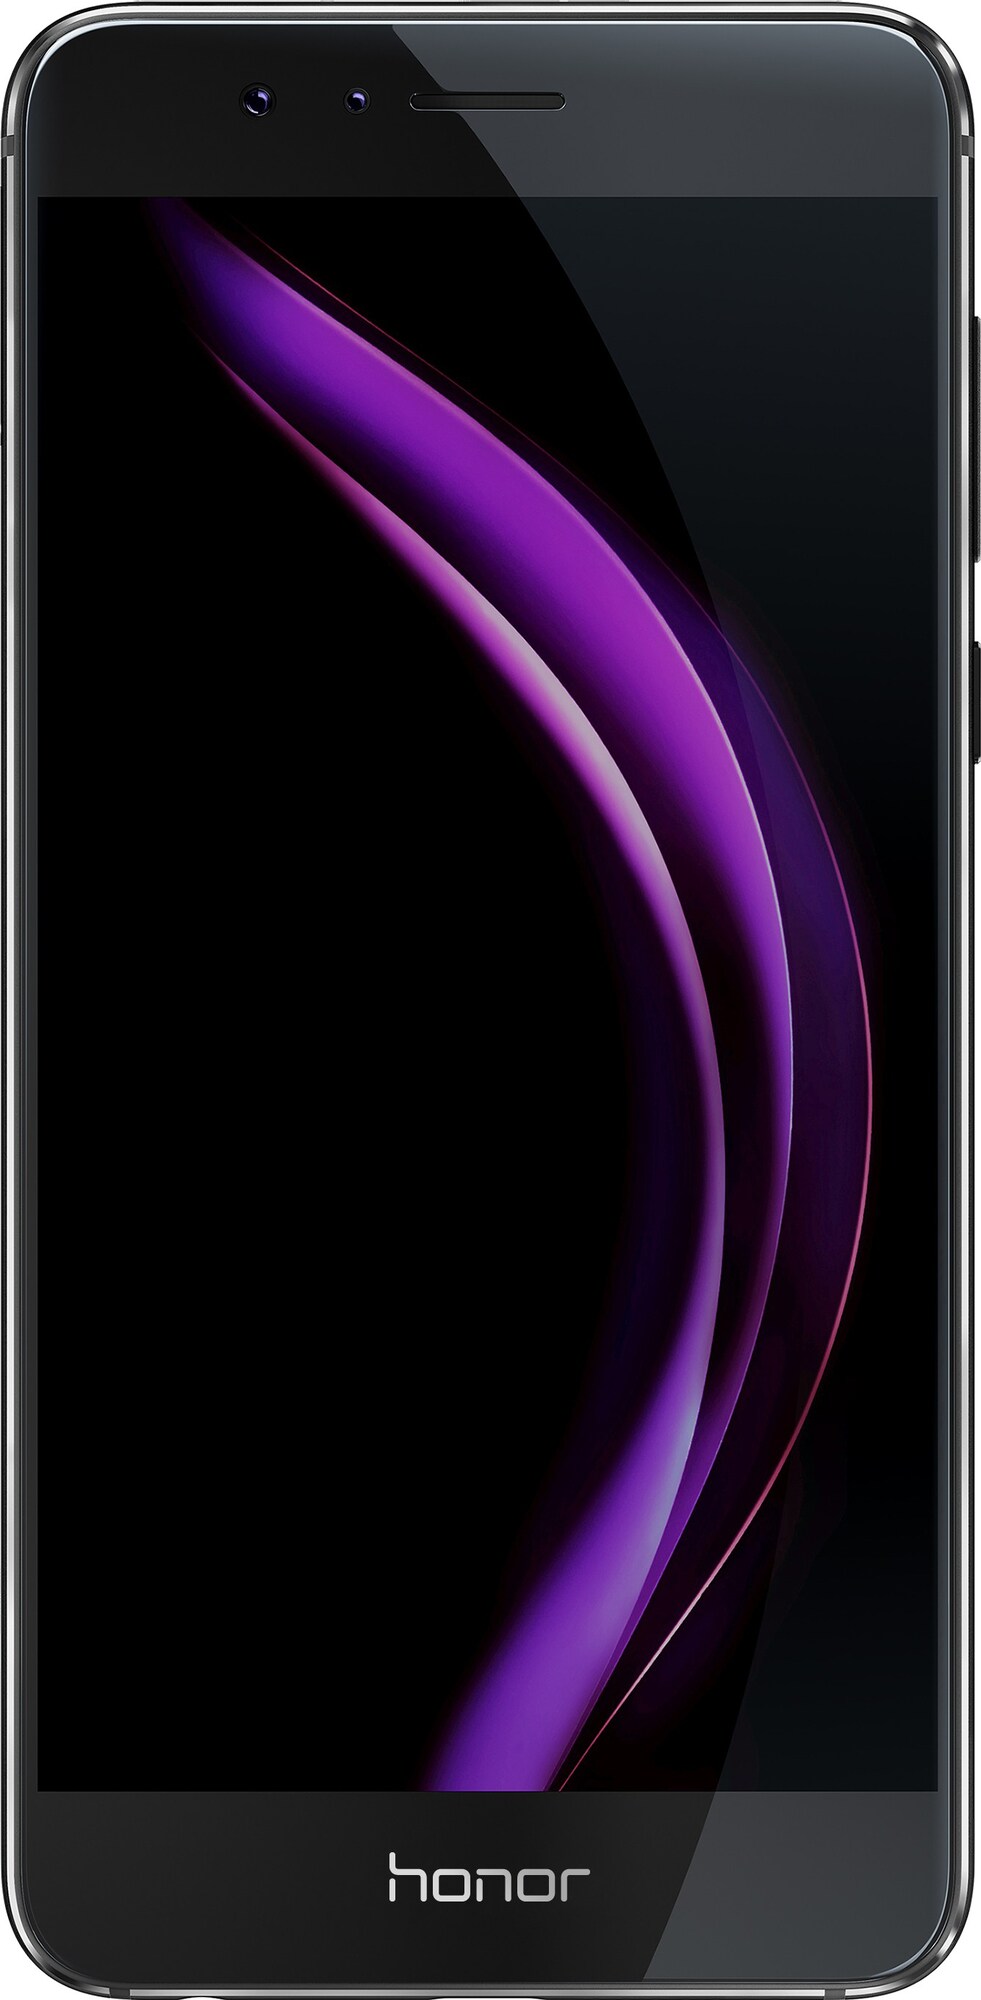 Huawei Honor 8 Smartphone 32 GB dual-sim (svart) - Mobiltelefoner ...